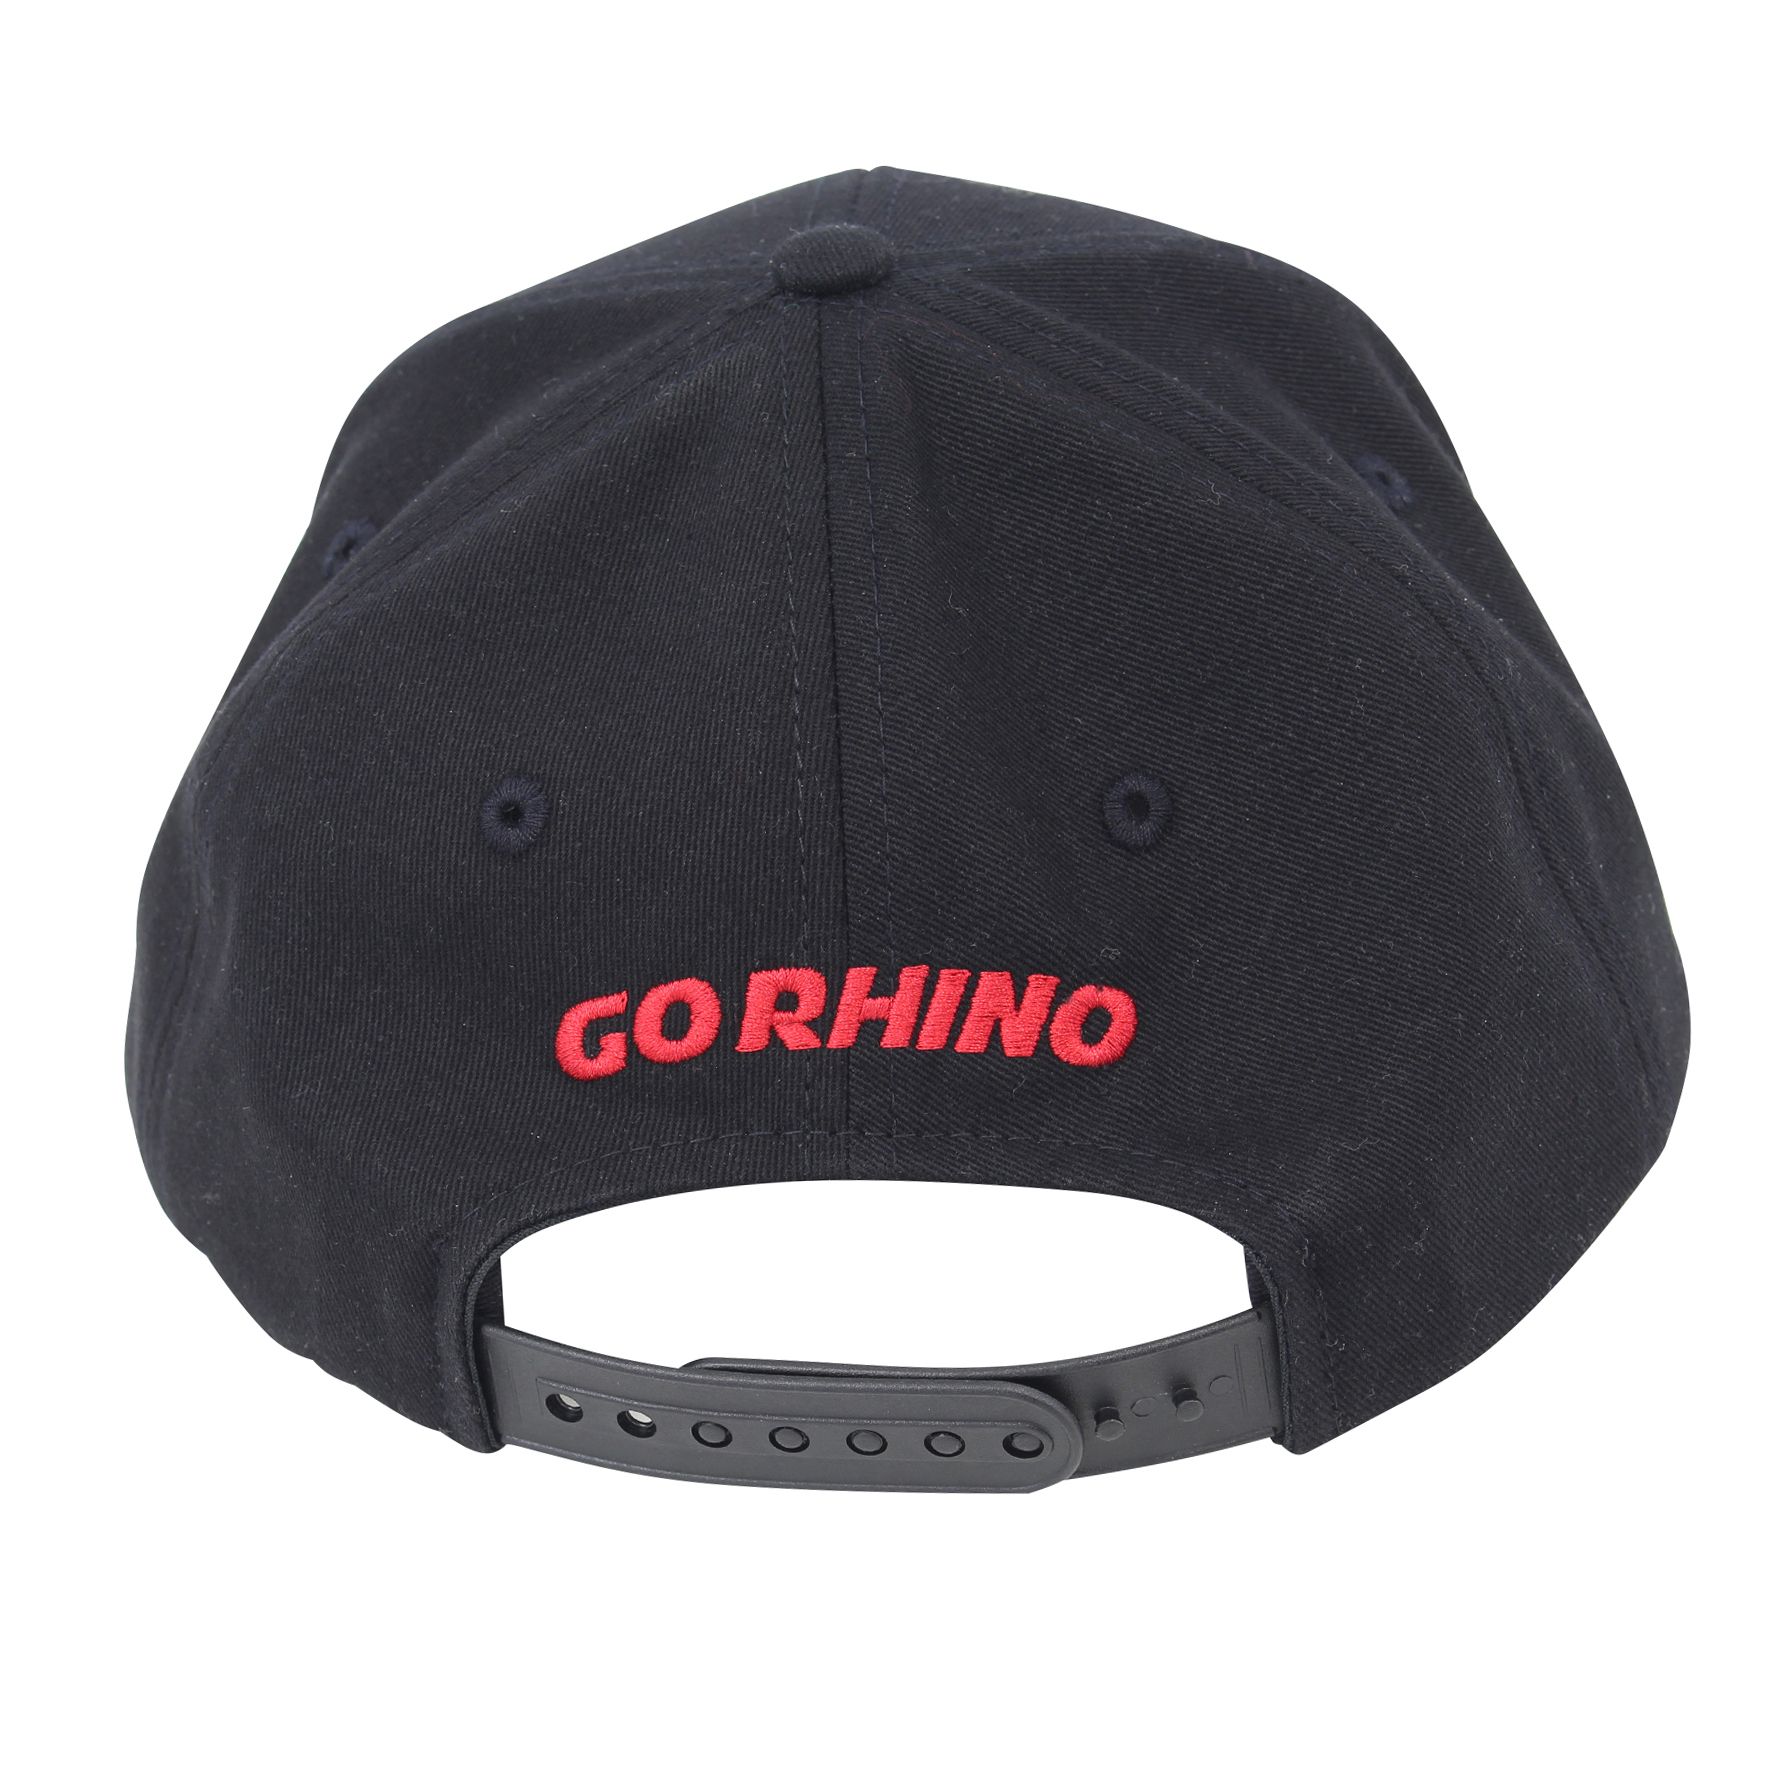 Go Rhino EX0383 - Go Rhino Logo Flat Brim Hat, Red on Black